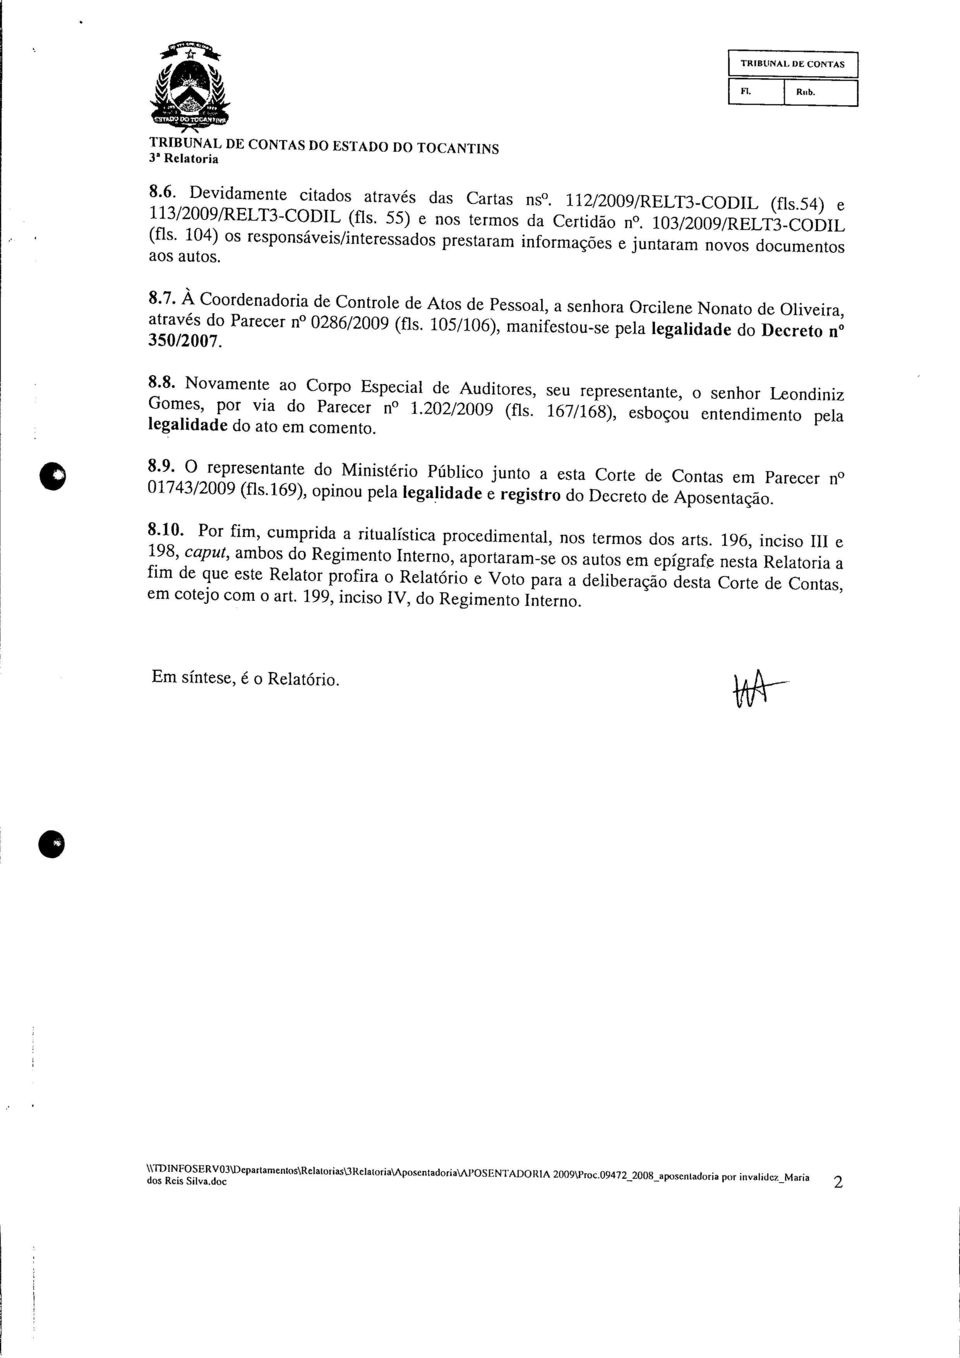 PafeCer " 286/2009 (fls- 105/106)> manifestou-se pela legalidade do Decreto n 8.8. Novamente ao Corpo Especial de Auditores, seu representante, o senhor Leondiniz Gomes, por via do Parecer n 1.